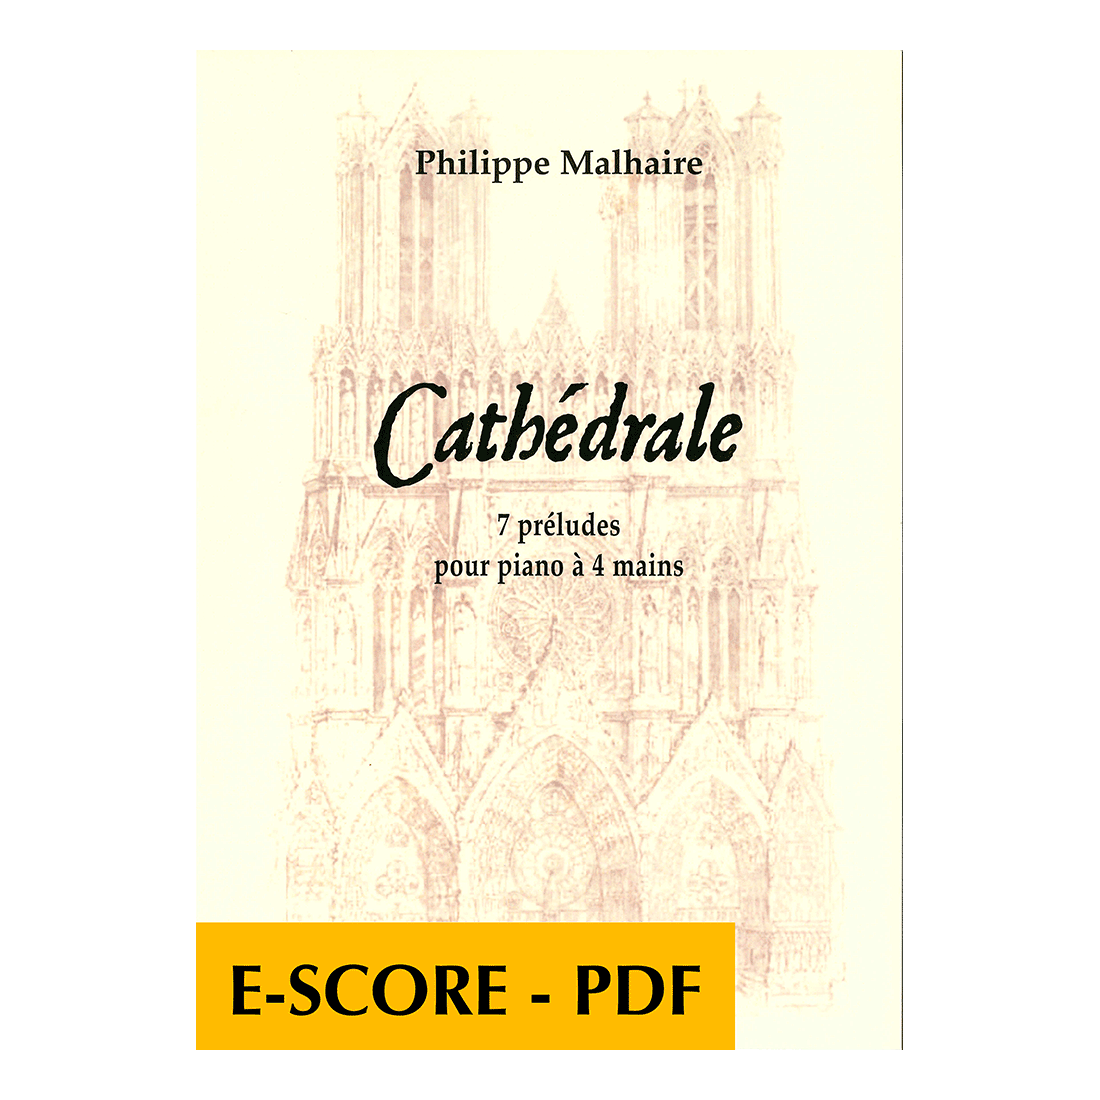 Cathédrale - 7 préludes pour piano à 4 mains - E-score PDF